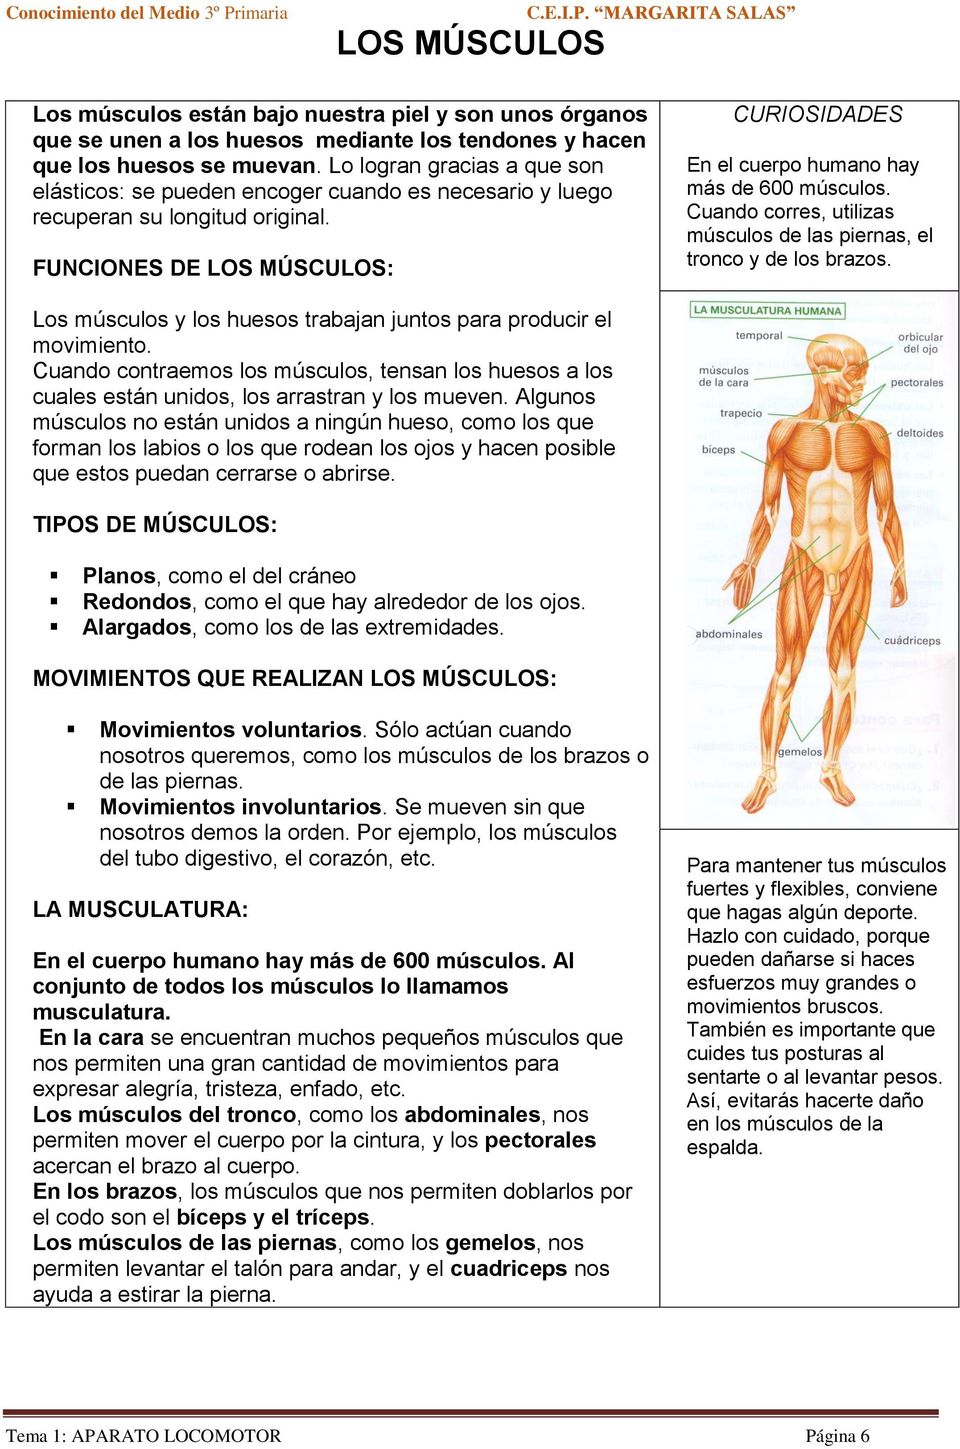 FUNCIONES DE LOS MÚSCULOS: CURIOSIDADES En el cuerpo humano hay más de 600 músculos. Cuando corres, utilizas músculos de las piernas, el tronco y de los brazos.